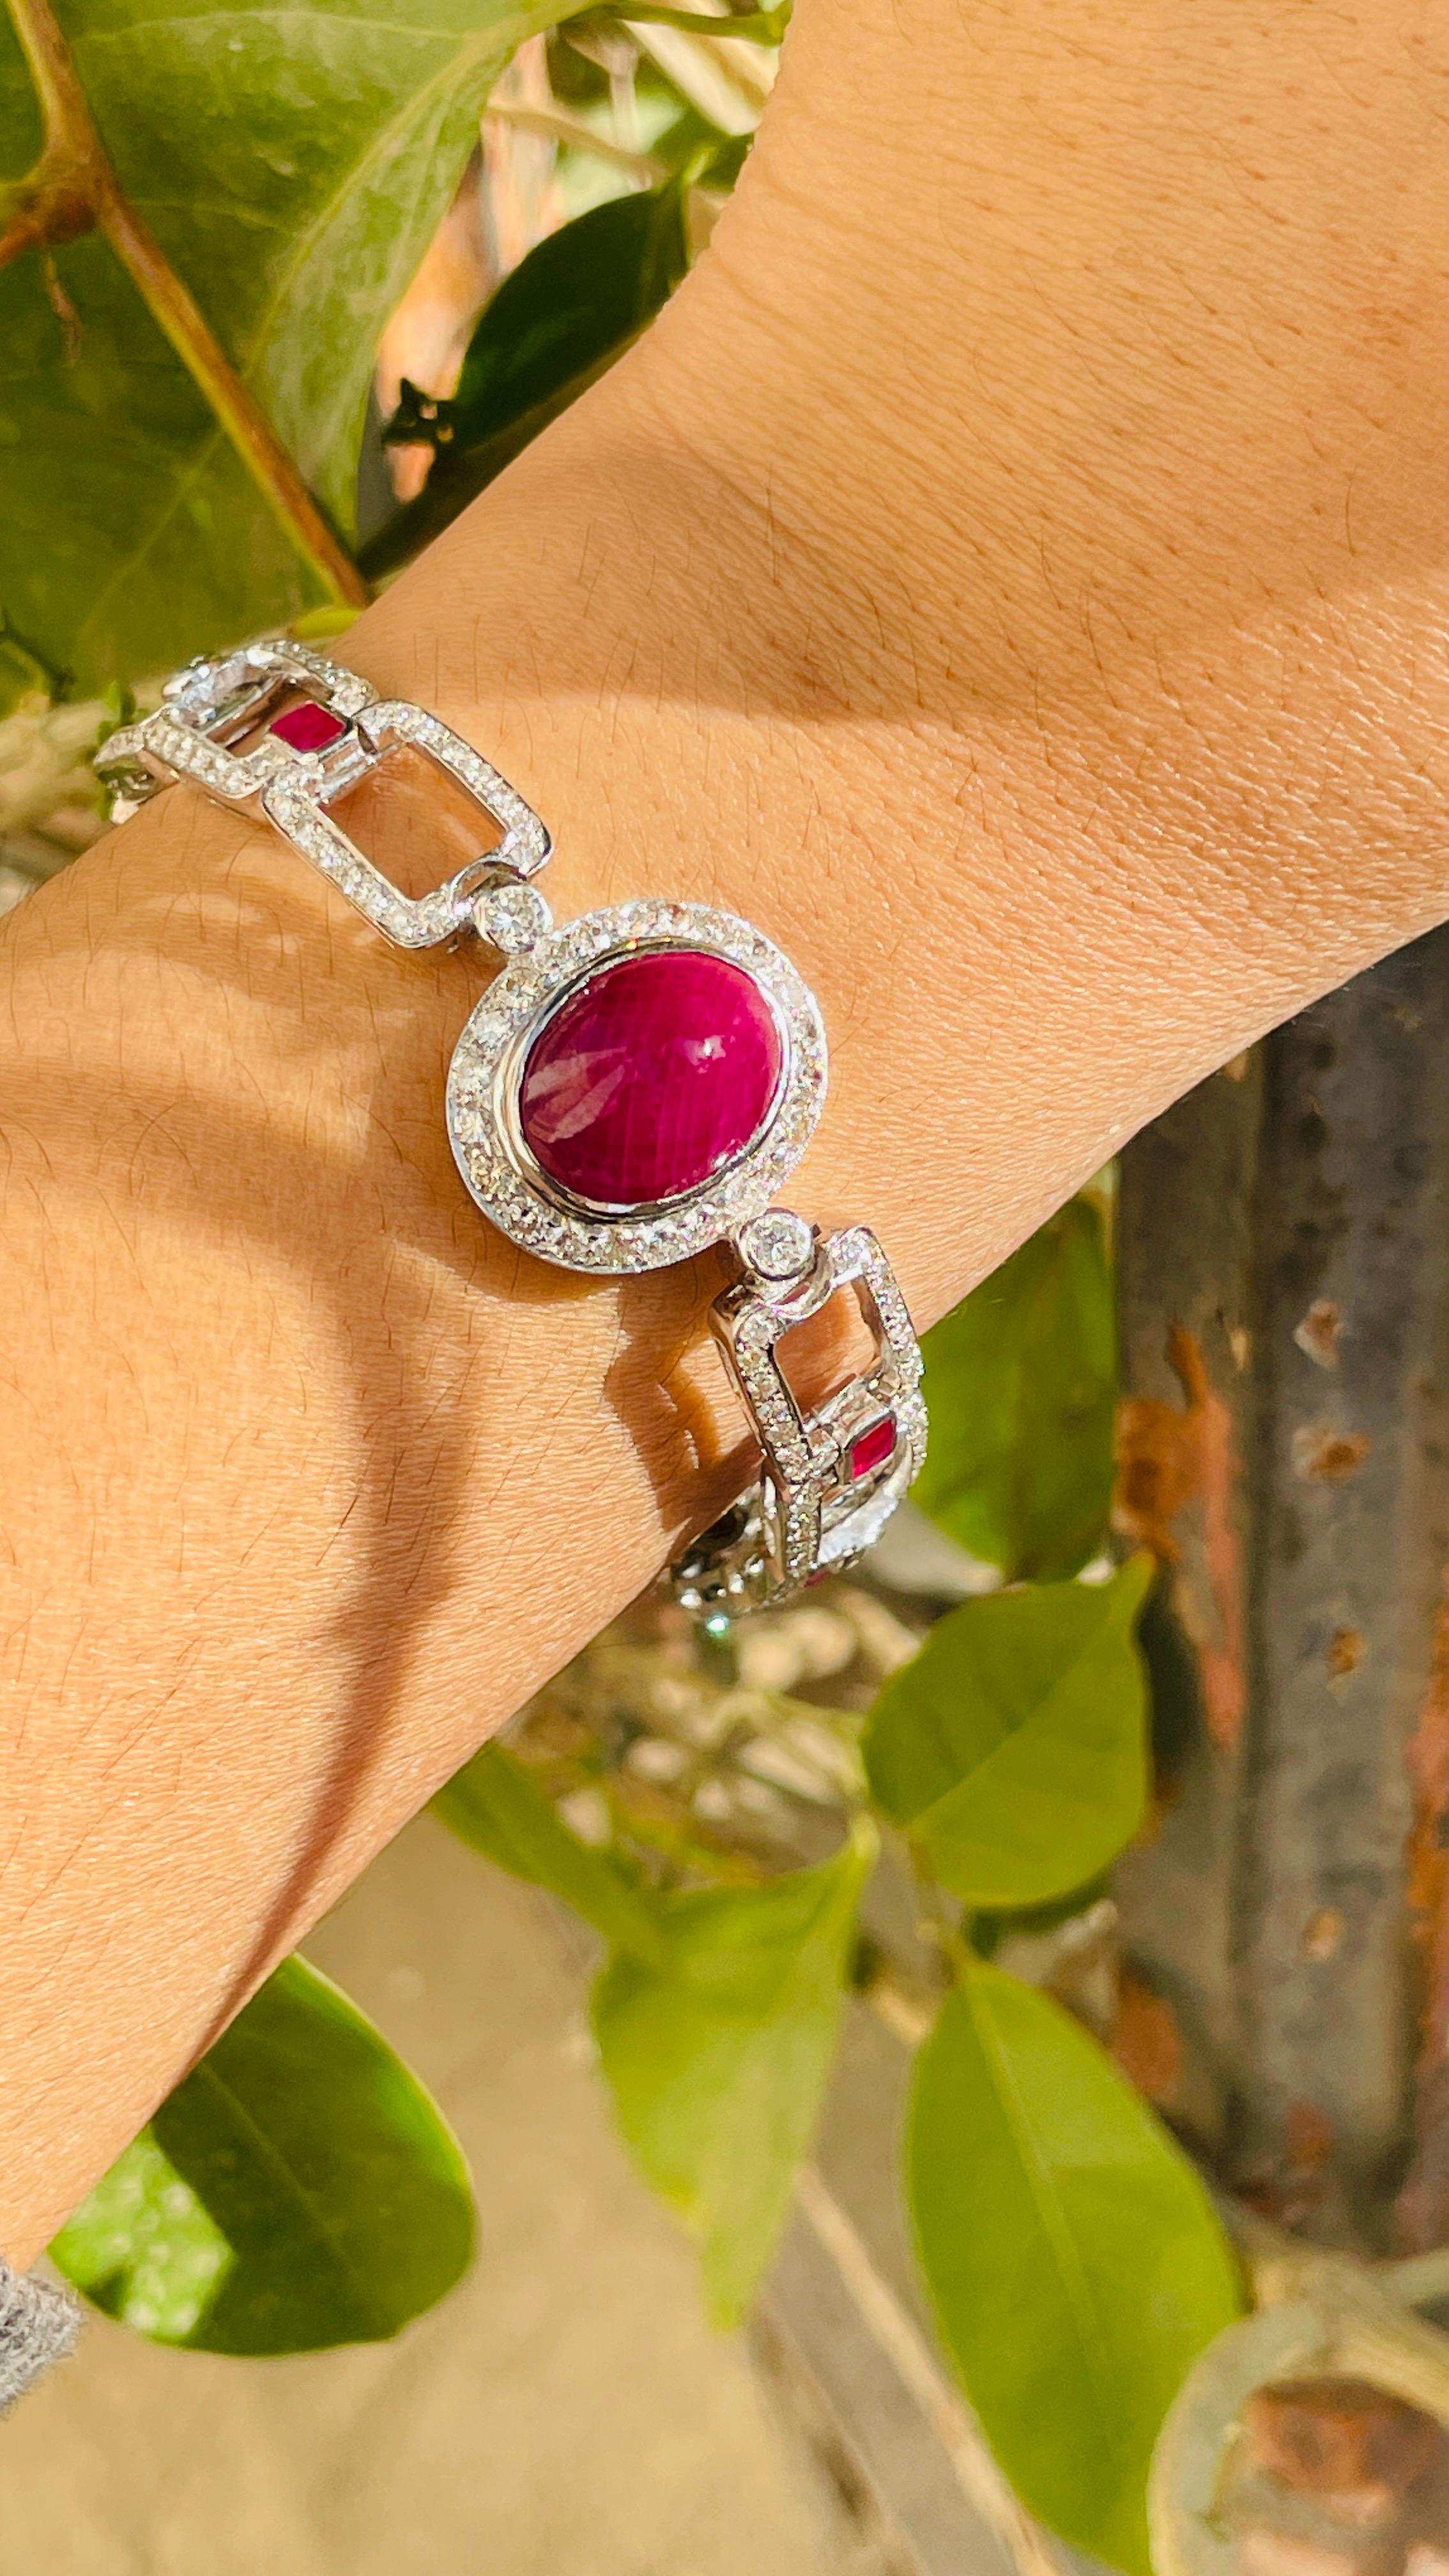 Armband mit Rubinen und Diamanten aus 18 Karat Gold. Es hat einen perfekten ovalen Schliff Edelstein zu machen Sie stehen auf jeden Anlass oder eine Veranstaltung.
Ein Gliederarmband ist ein wichtiges Schmuckstück für Ihren Hochzeitstag. Der